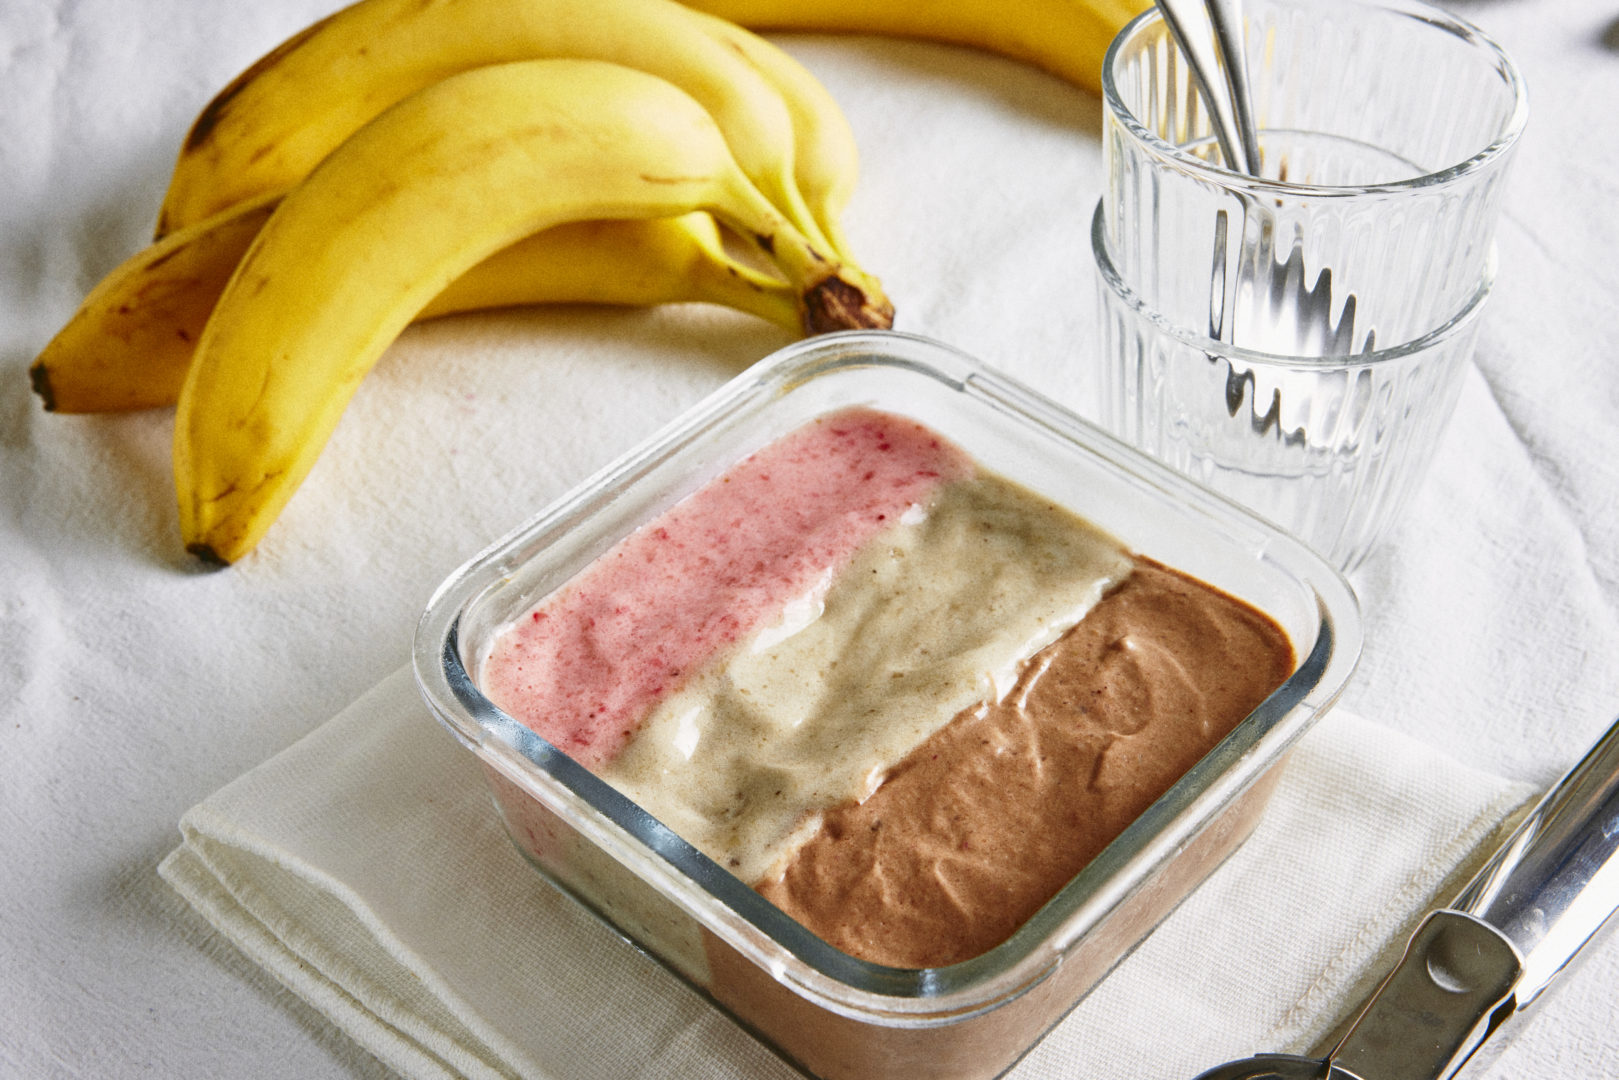 Receita de sorvete napolitano: em cima da mesa há um cacho de bananas amarelas ao lado de uma taça trnasparente e um pote com o sorvete de três cores - rosa, branco e marrom. 